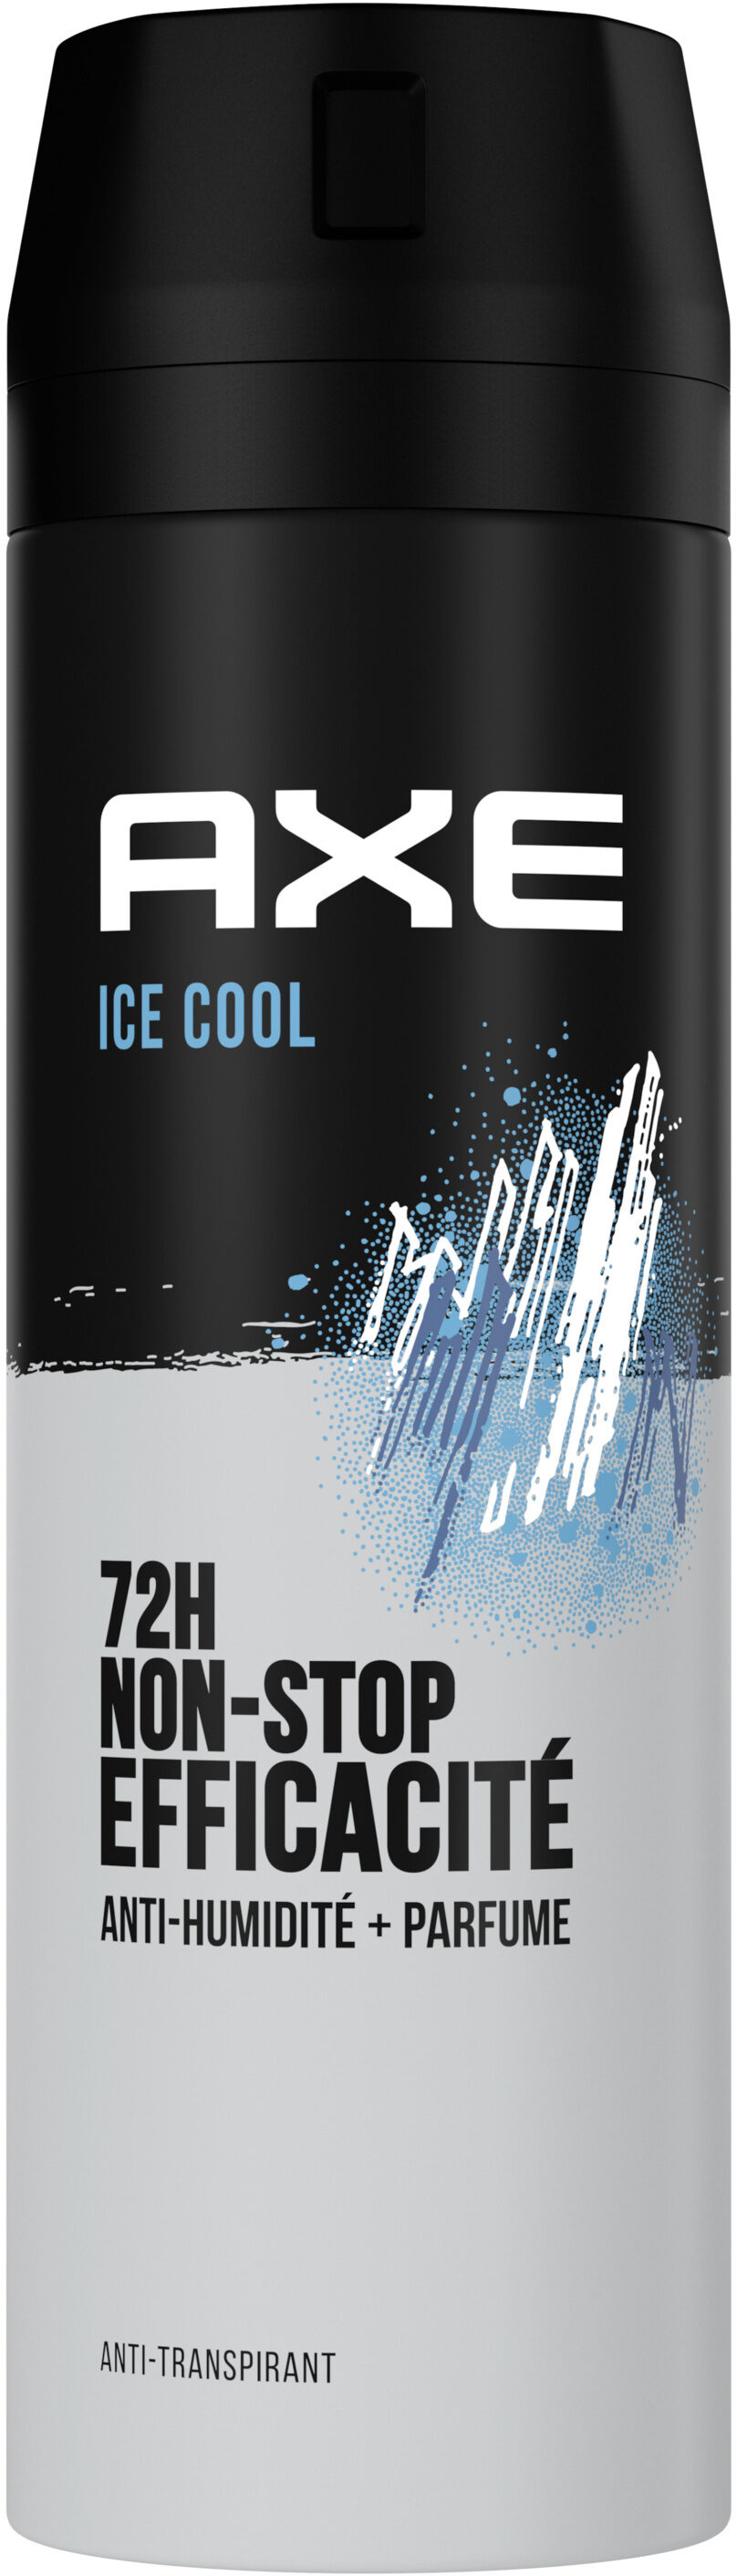 Axe ap ice cool 200ml - Produto - fr